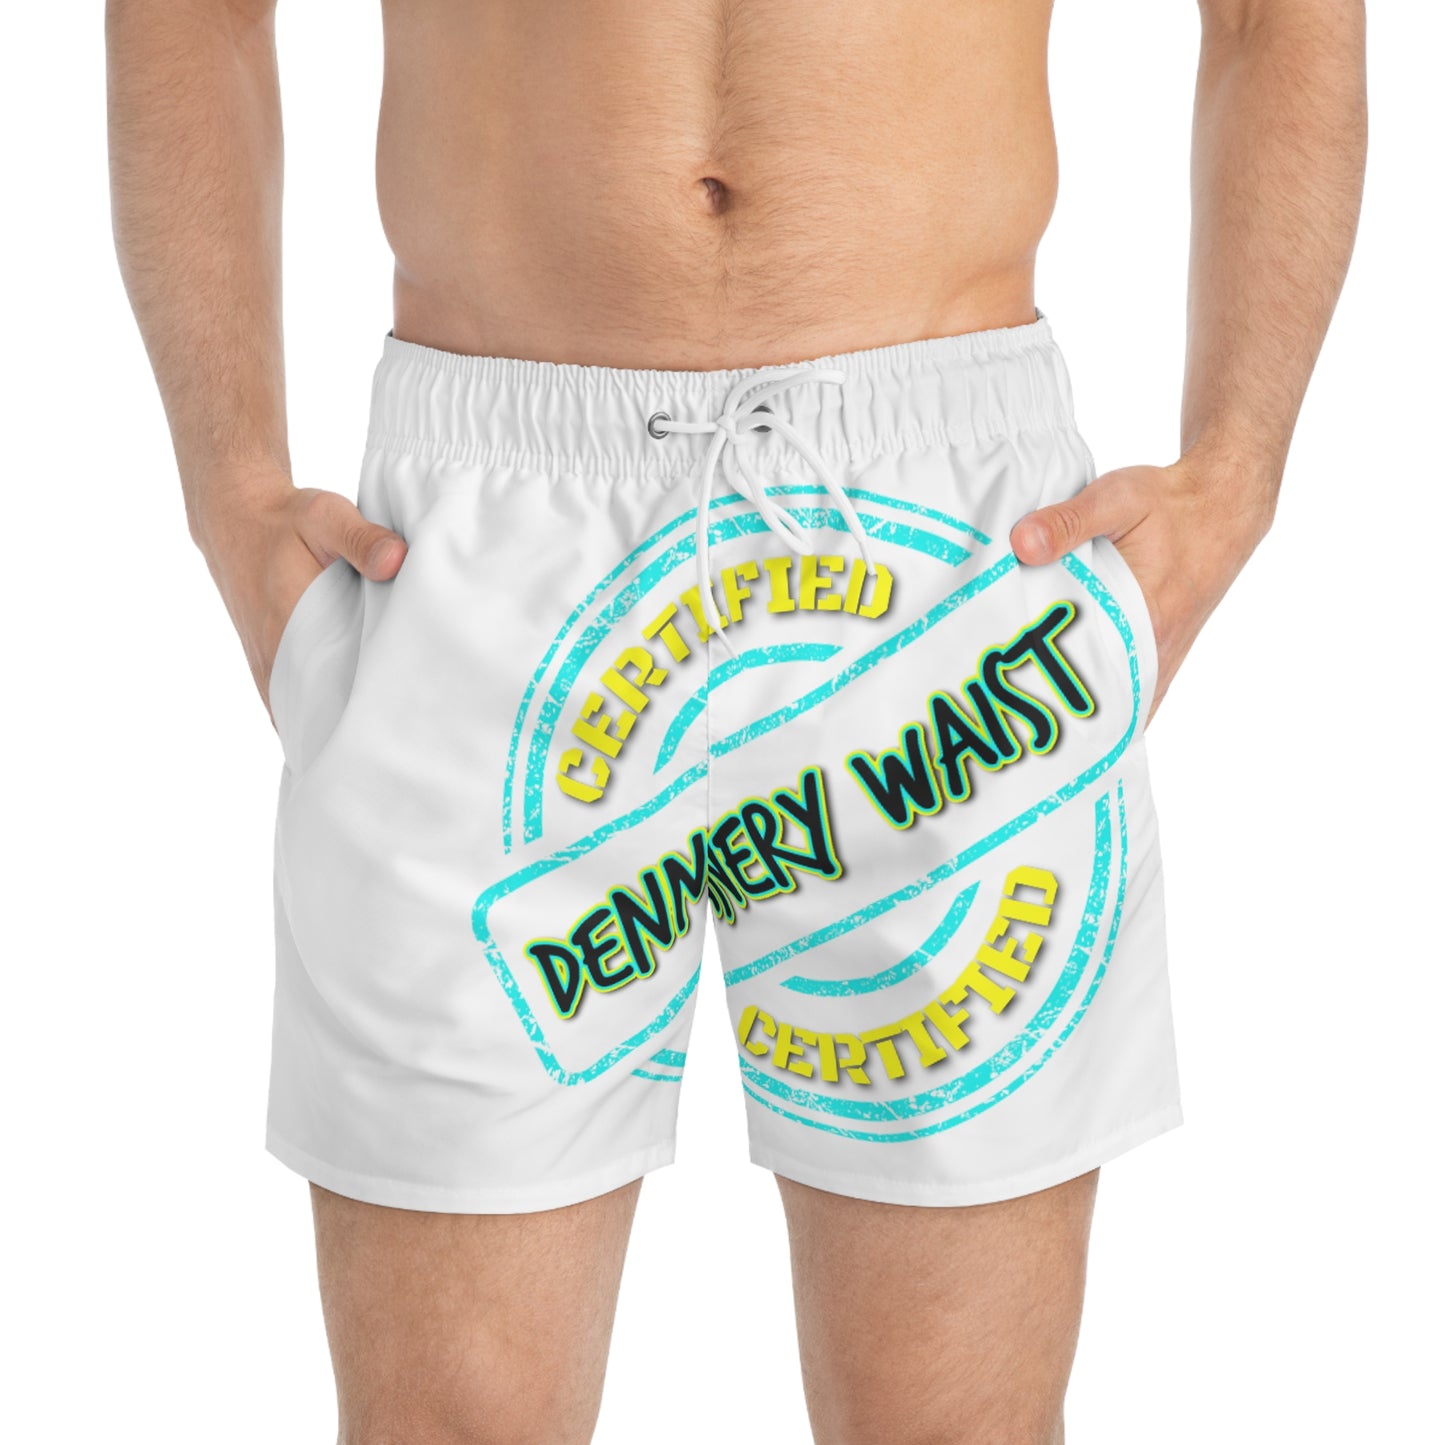 Keevo Certified - Dennery Waist -  Men's Fete Shorts (white)